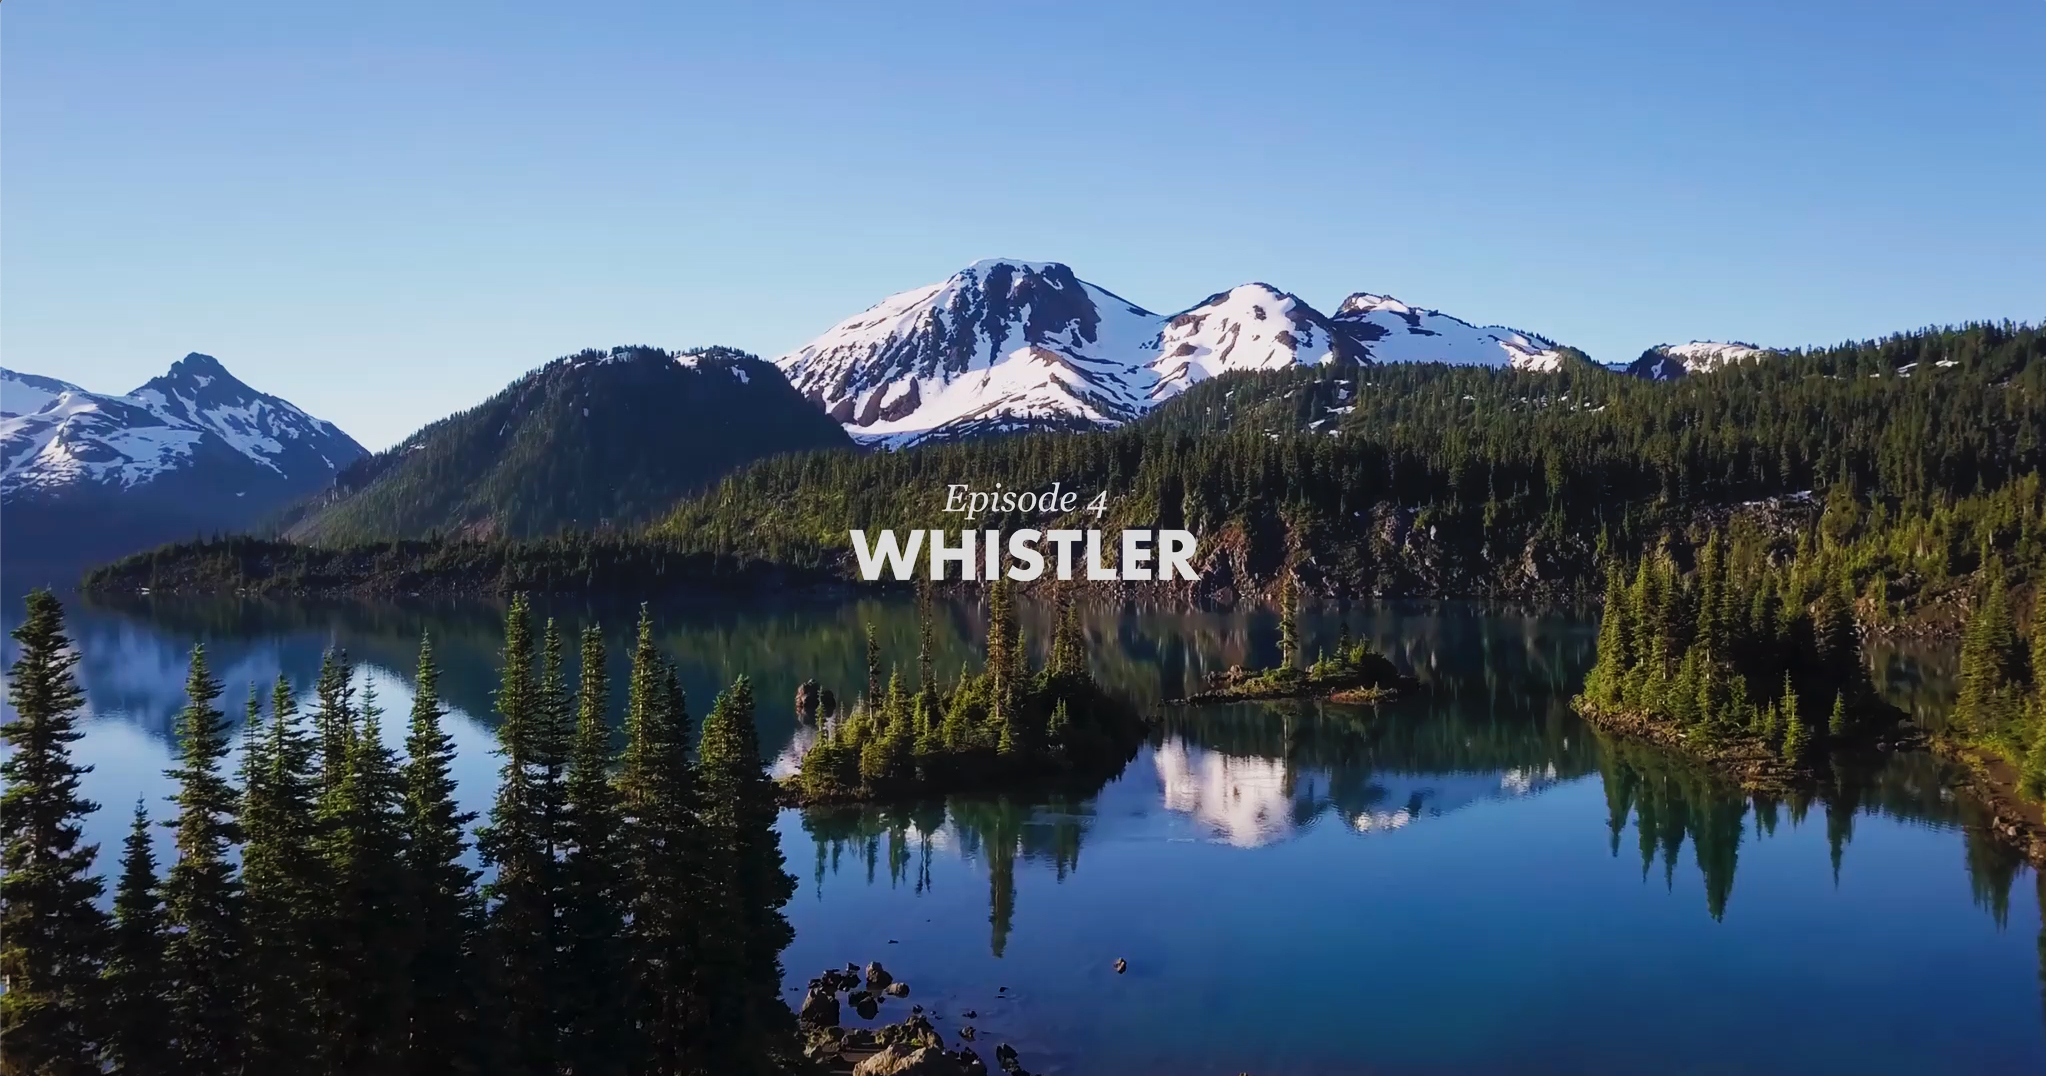 VIDEO: The SHOWCASE – Episode 4, Whistler